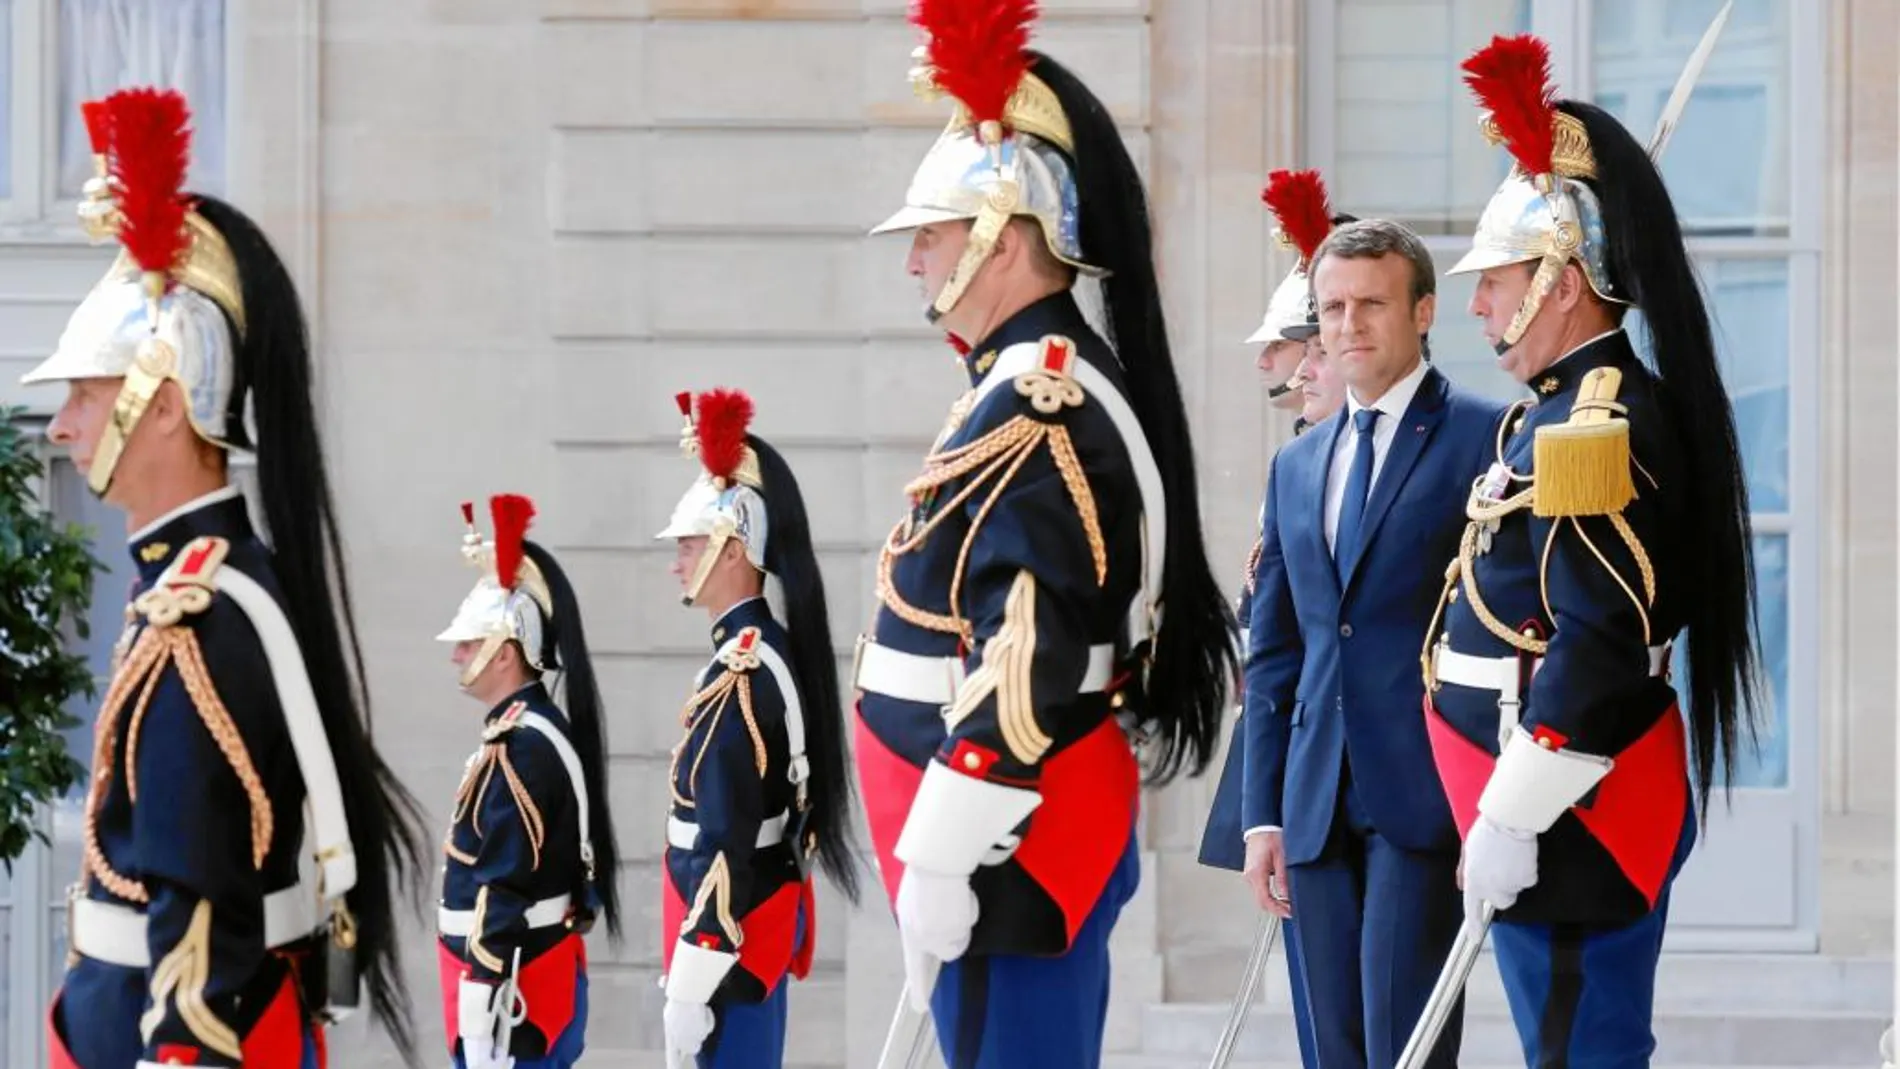 El presidente de la República francesa, Emmanuel Macron, rodeado de la guardia presidencial, ayer, en los jardines del Palacio del Elíseo